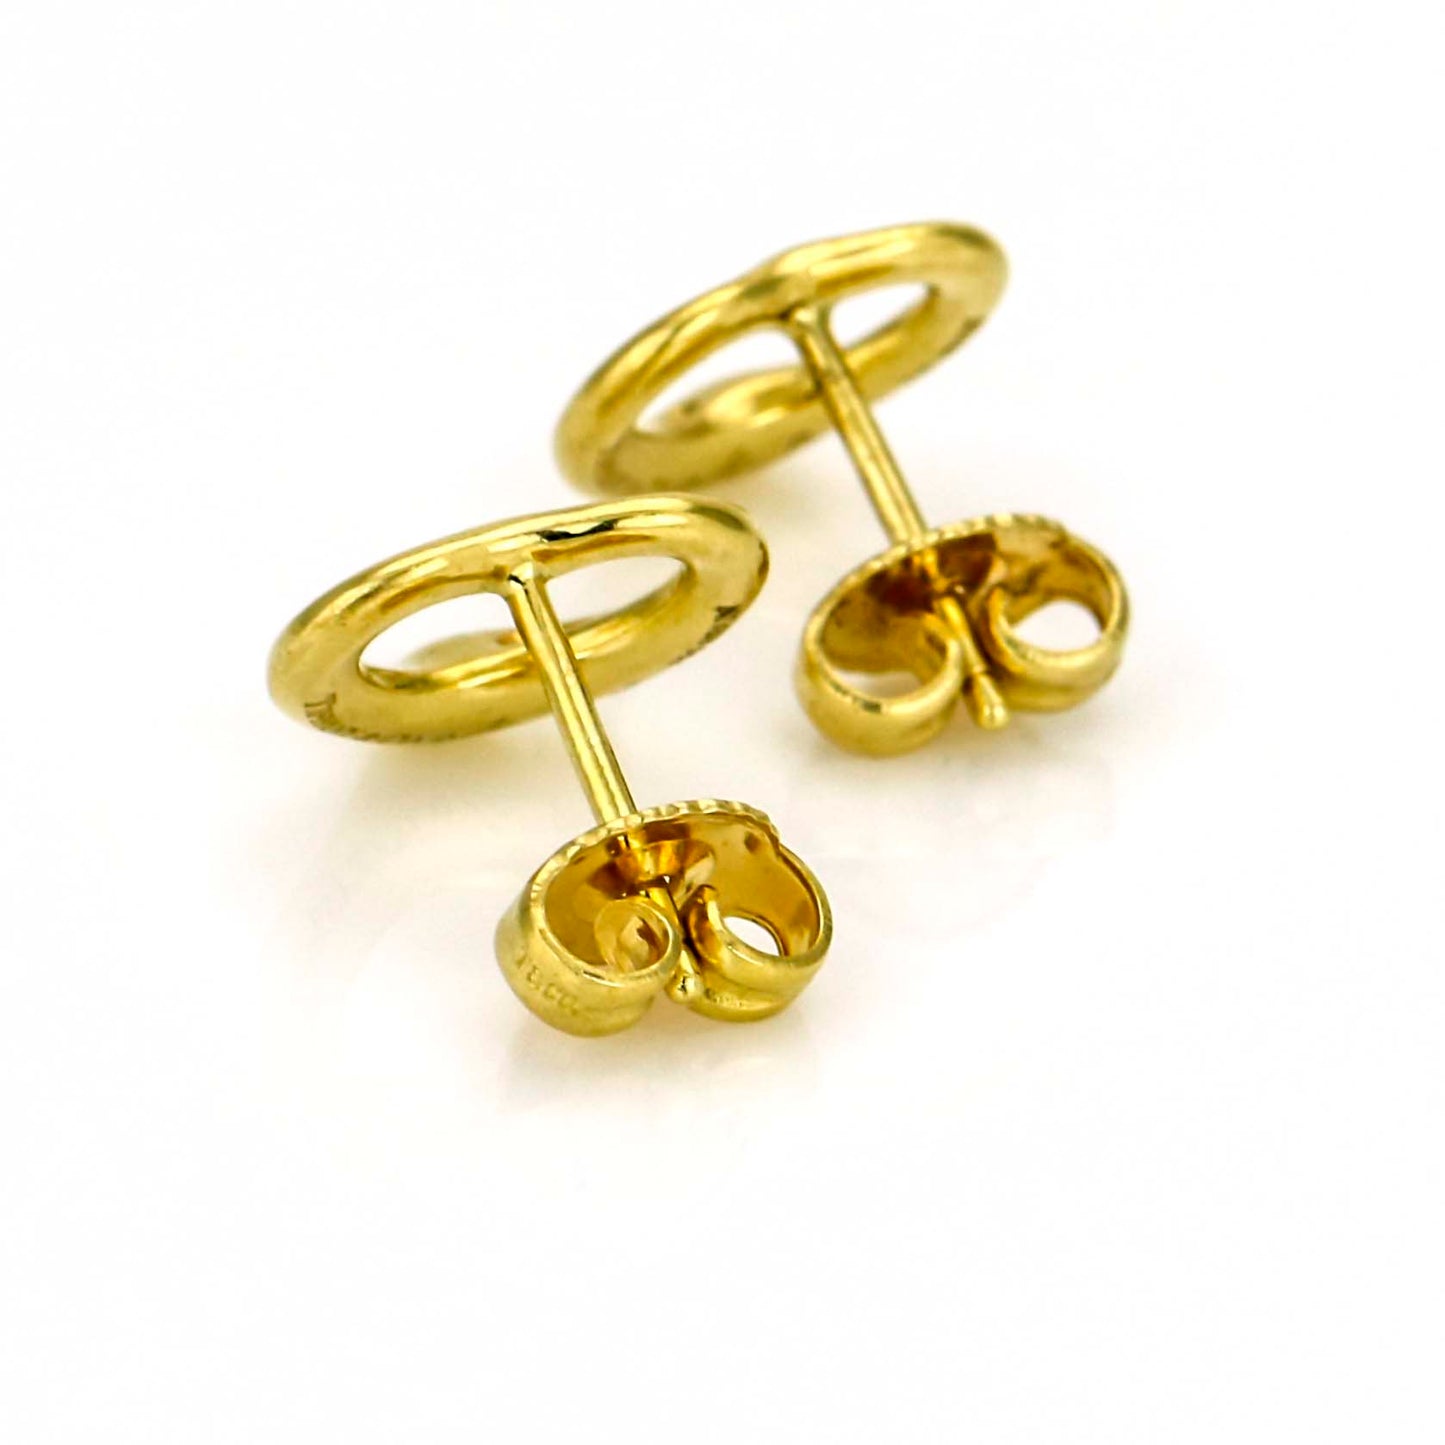 Tiffany & Co. Elsa Peretti 11mm Open Heart Earrings in 18k Yellow Gold